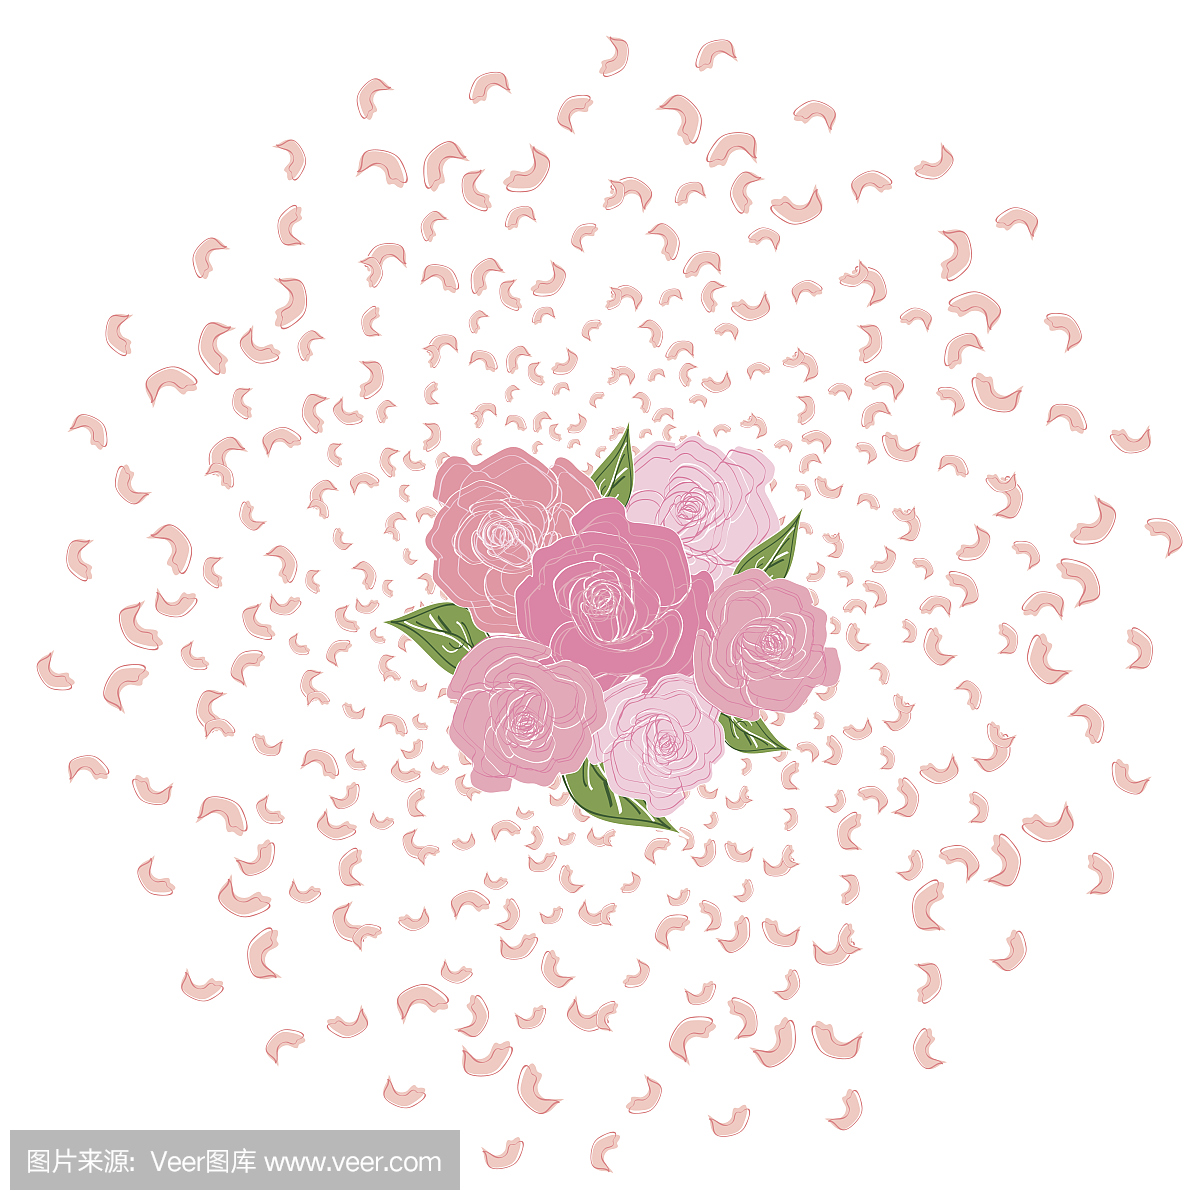 从玫瑰花瓣的圆圈飞行,樱花与一束玫瑰在中间